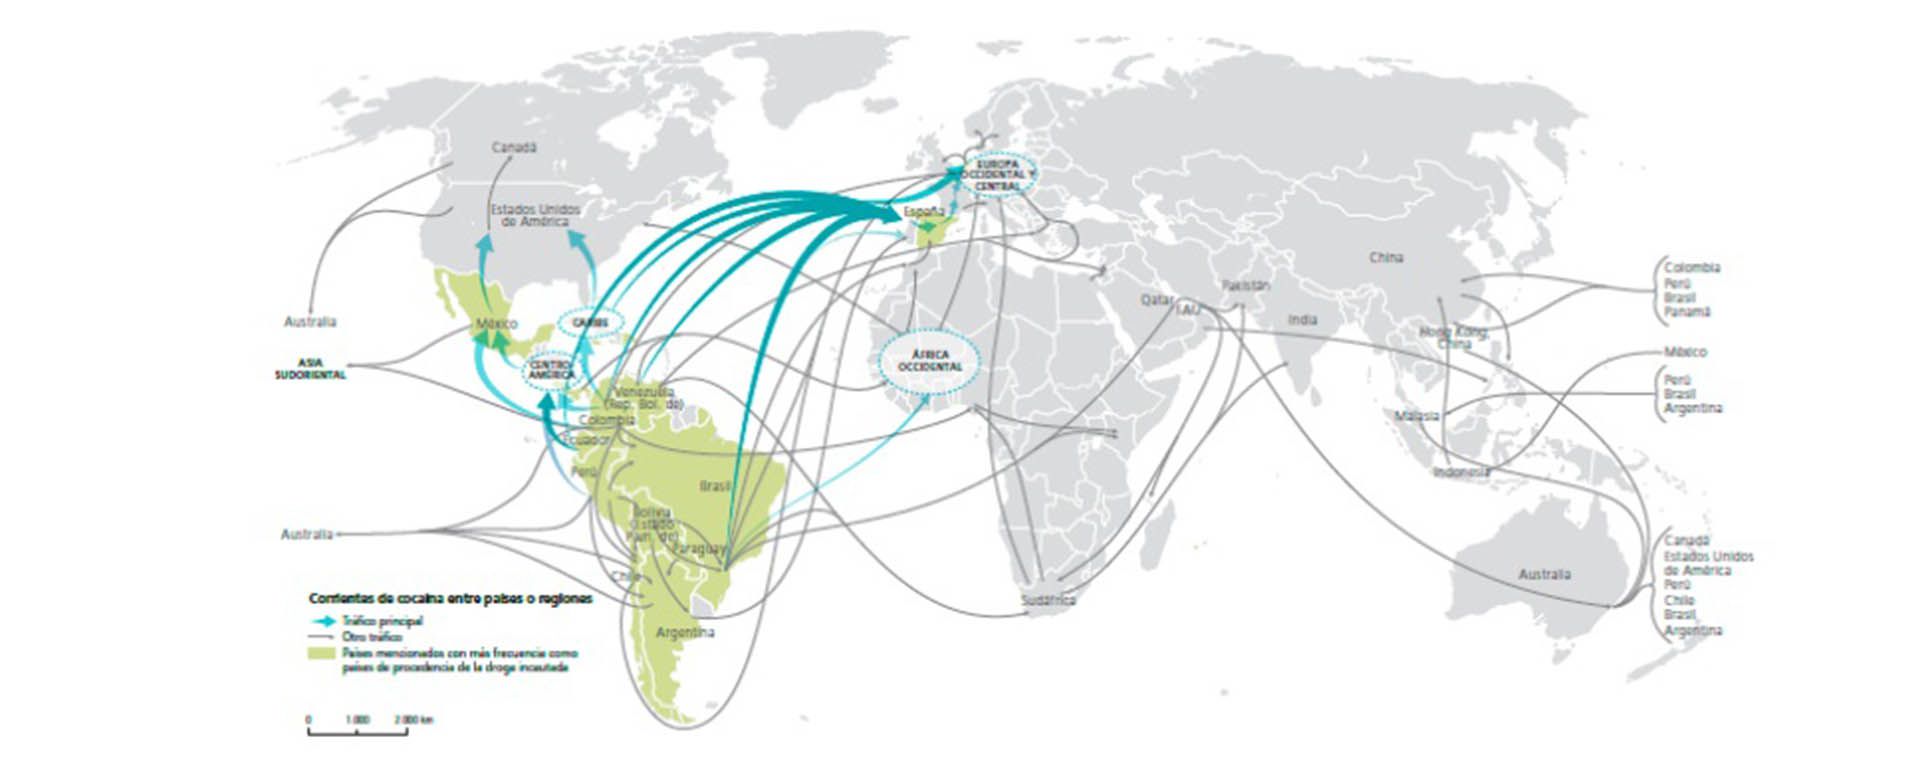 Las rutas del tráfico de cocaína entre países y regiones